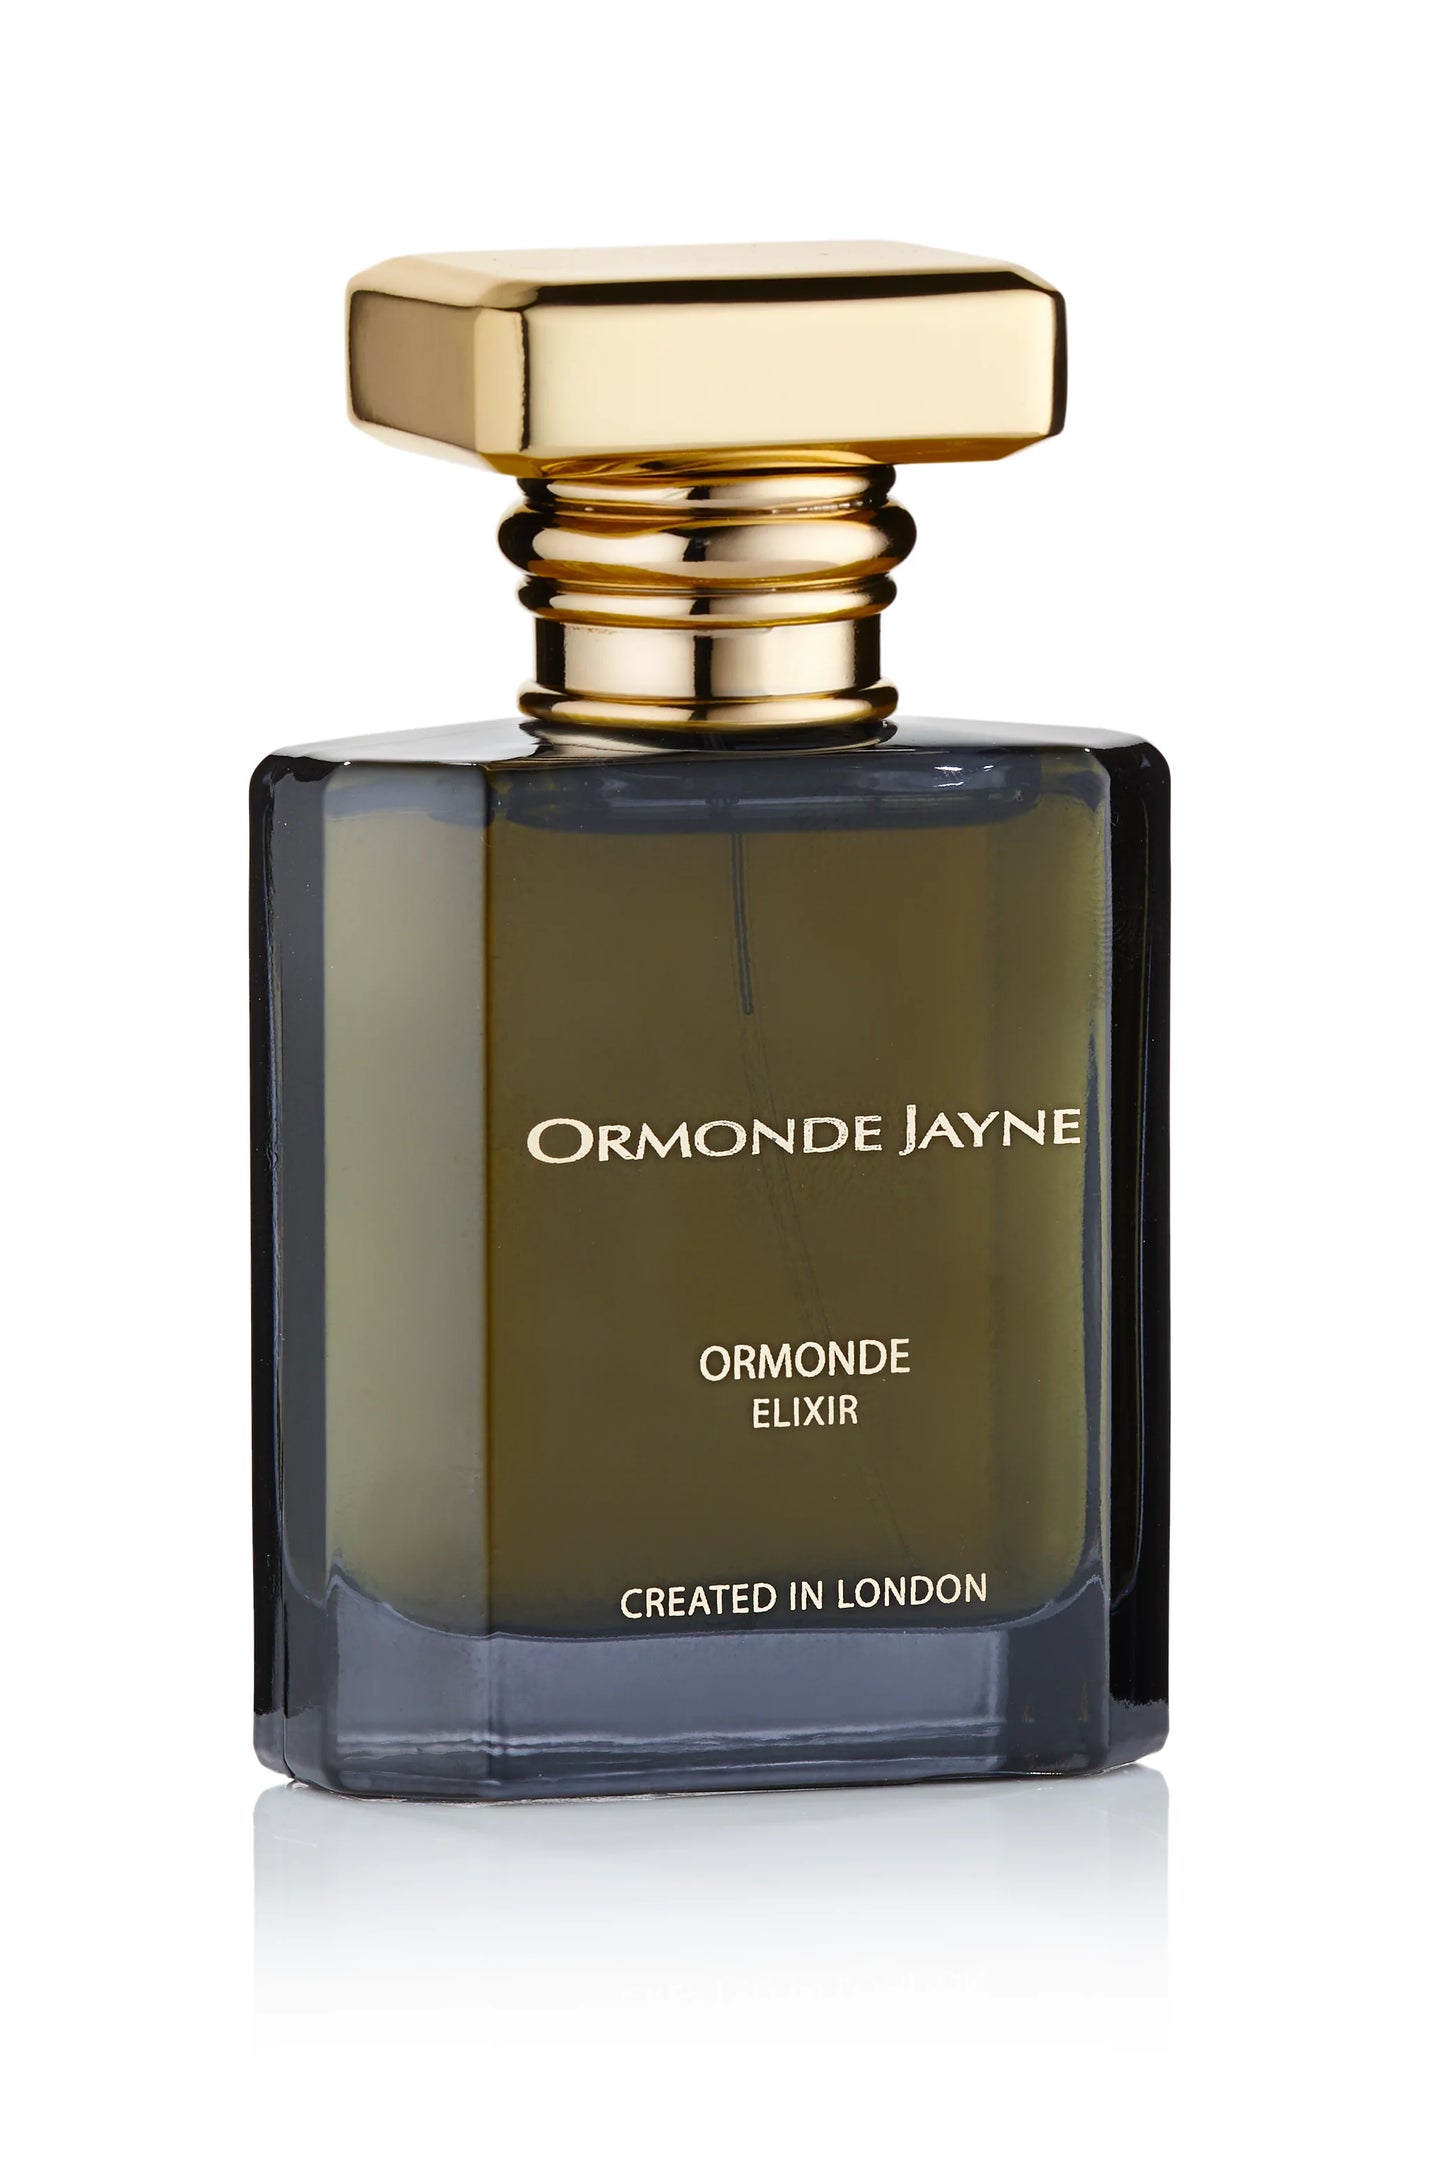 Ormonde Jayne Ormonde Elixir 2ml 0.06 fl. 온스 공식 향기 샘플